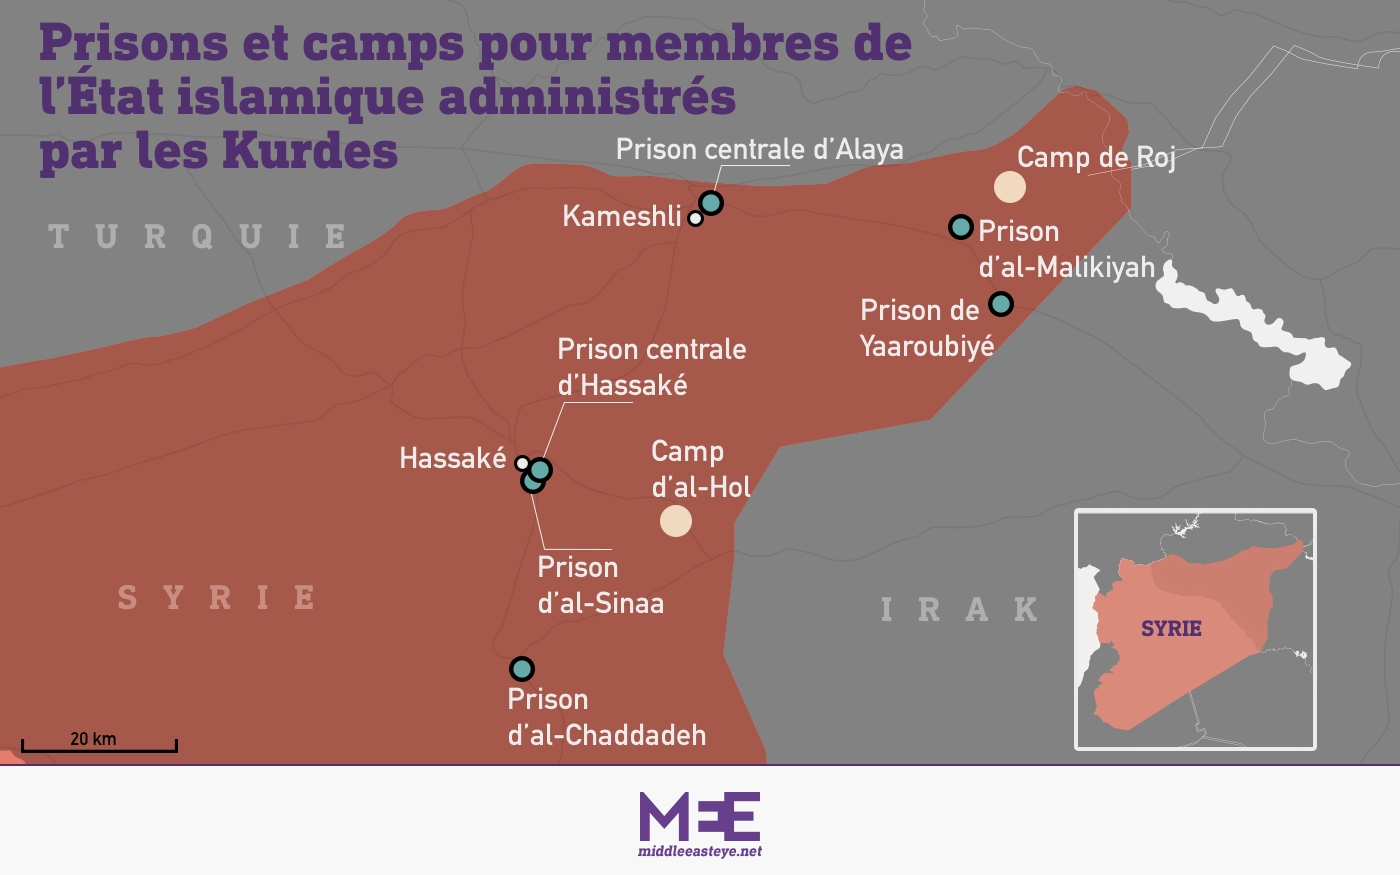 On compte environ 60 000 femmes et enfants dans les camps de Roj et al-Hol et 10 000 hommes et adolescents dans les prisons